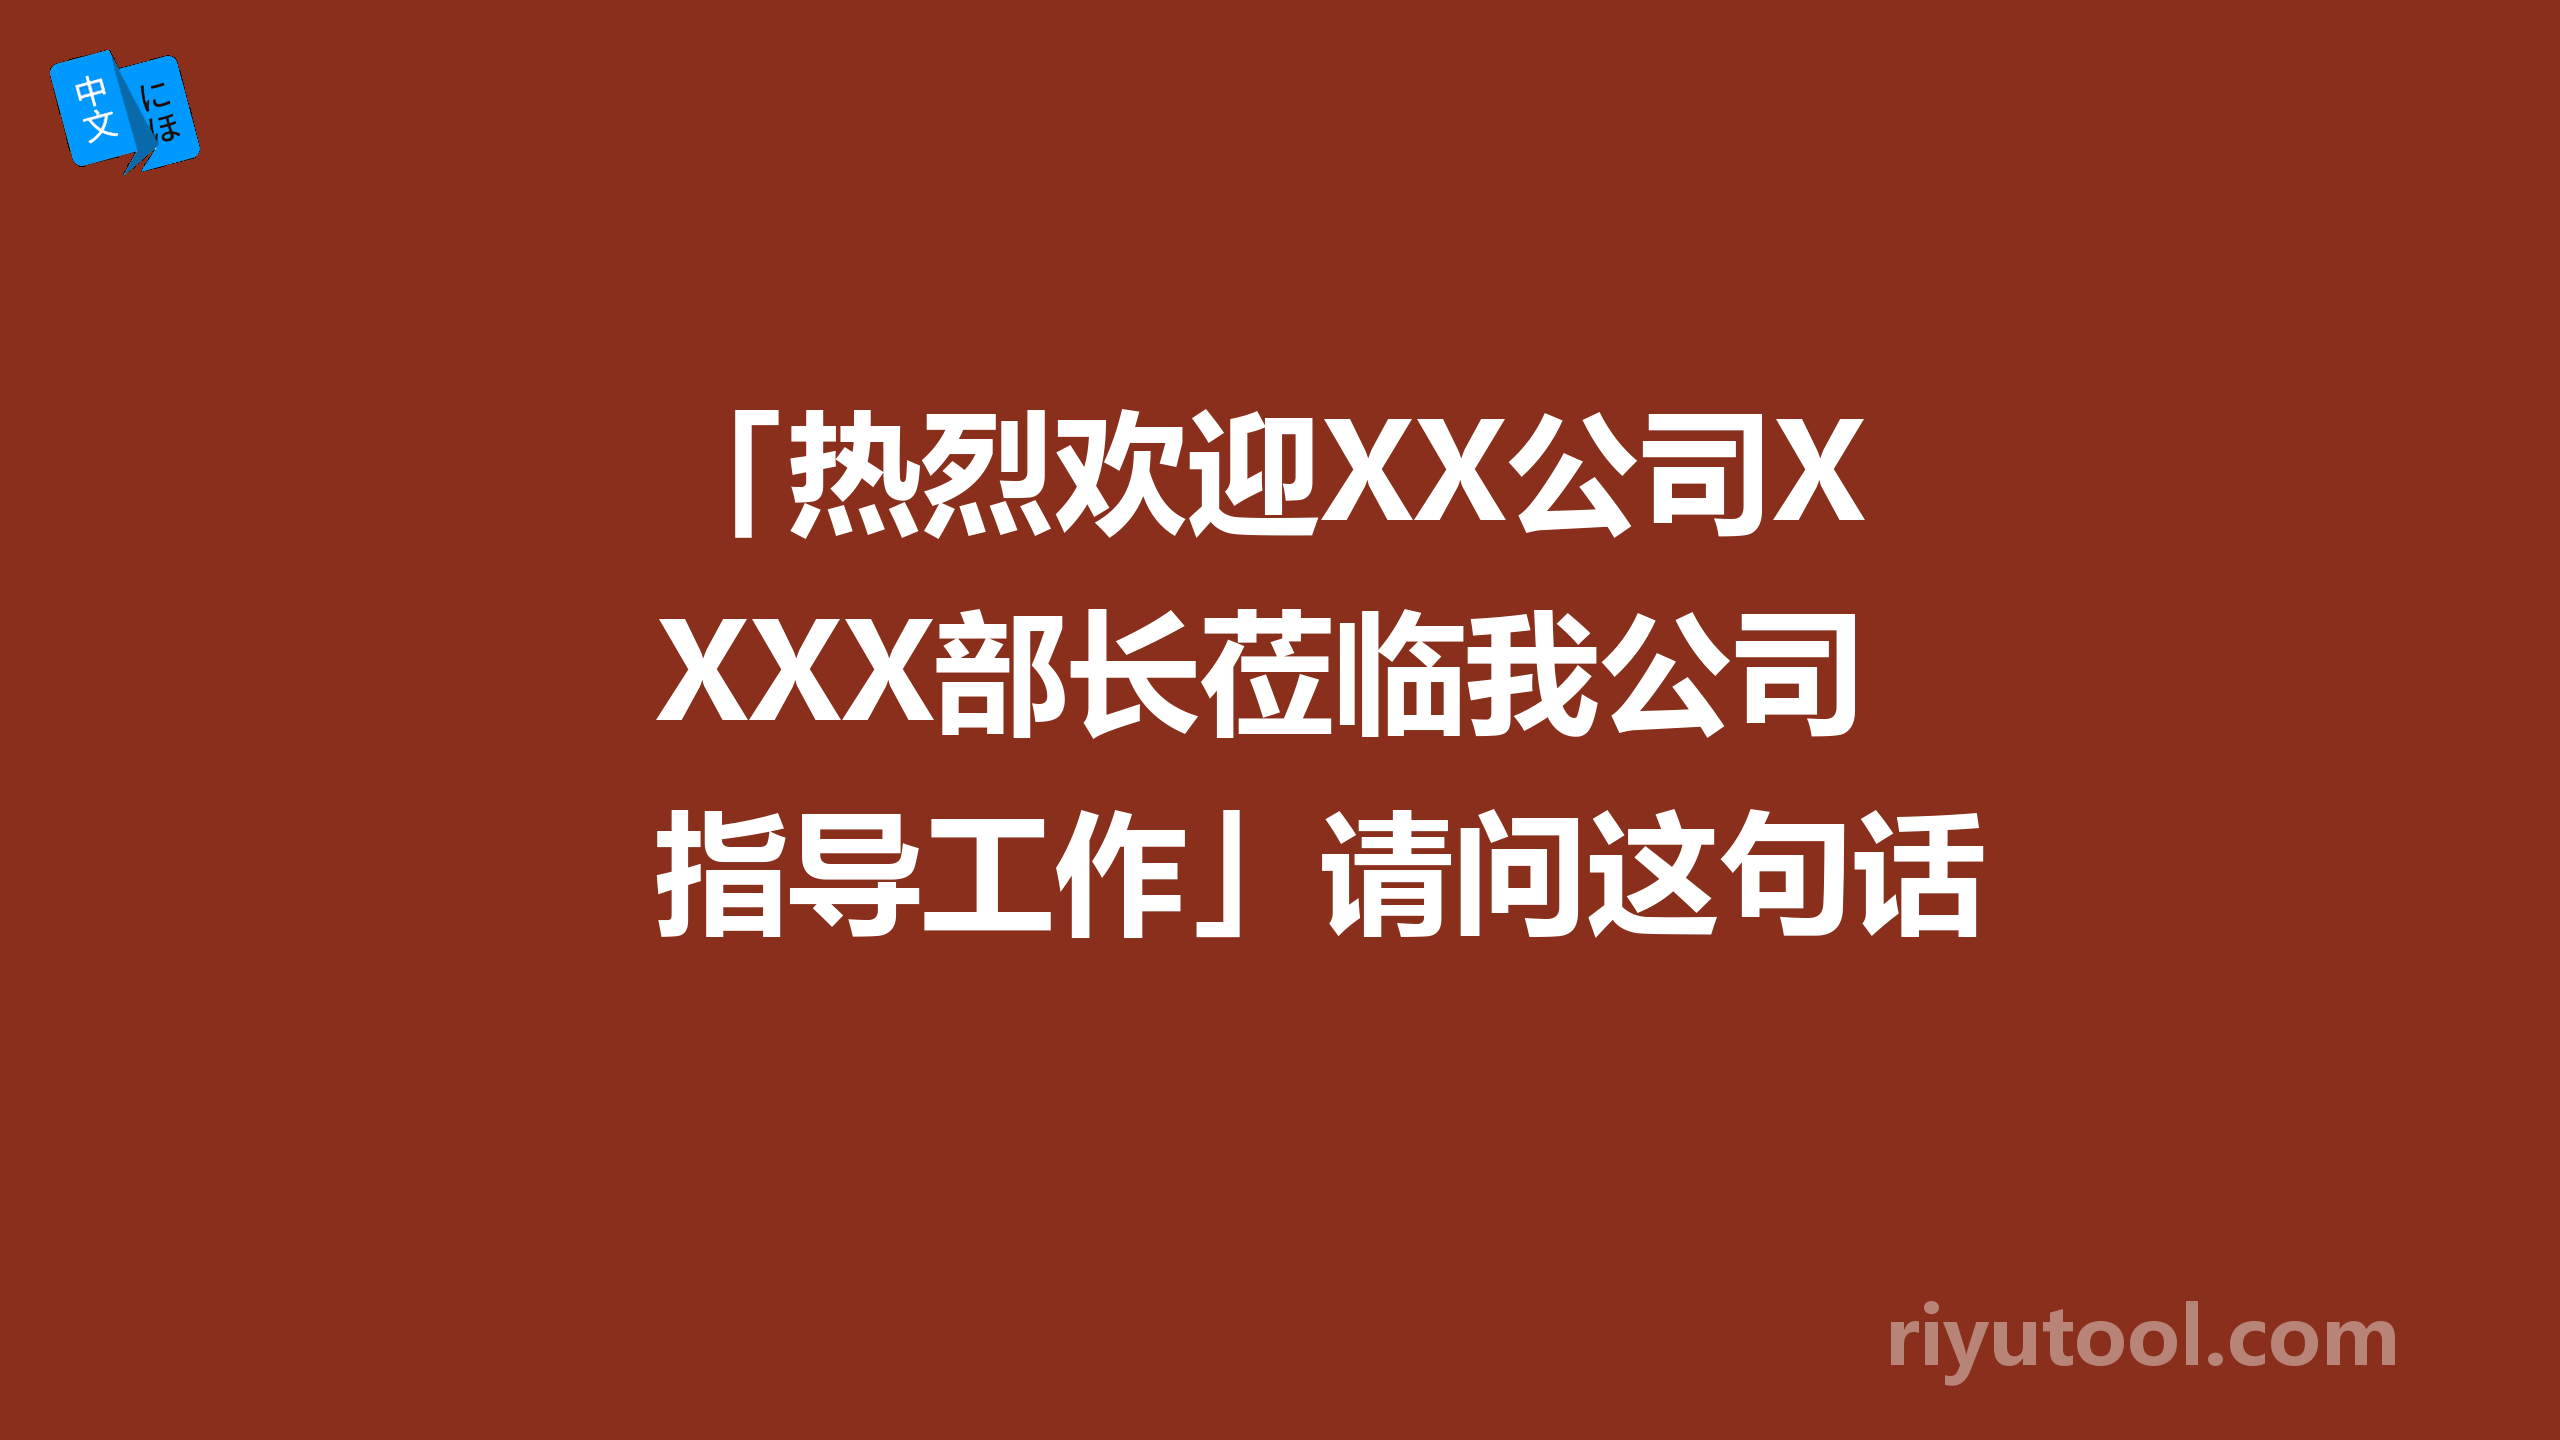 「热烈欢迎XX公司XXX部长莅临我公司指导工作」请问这句话怎么翻译？谢谢